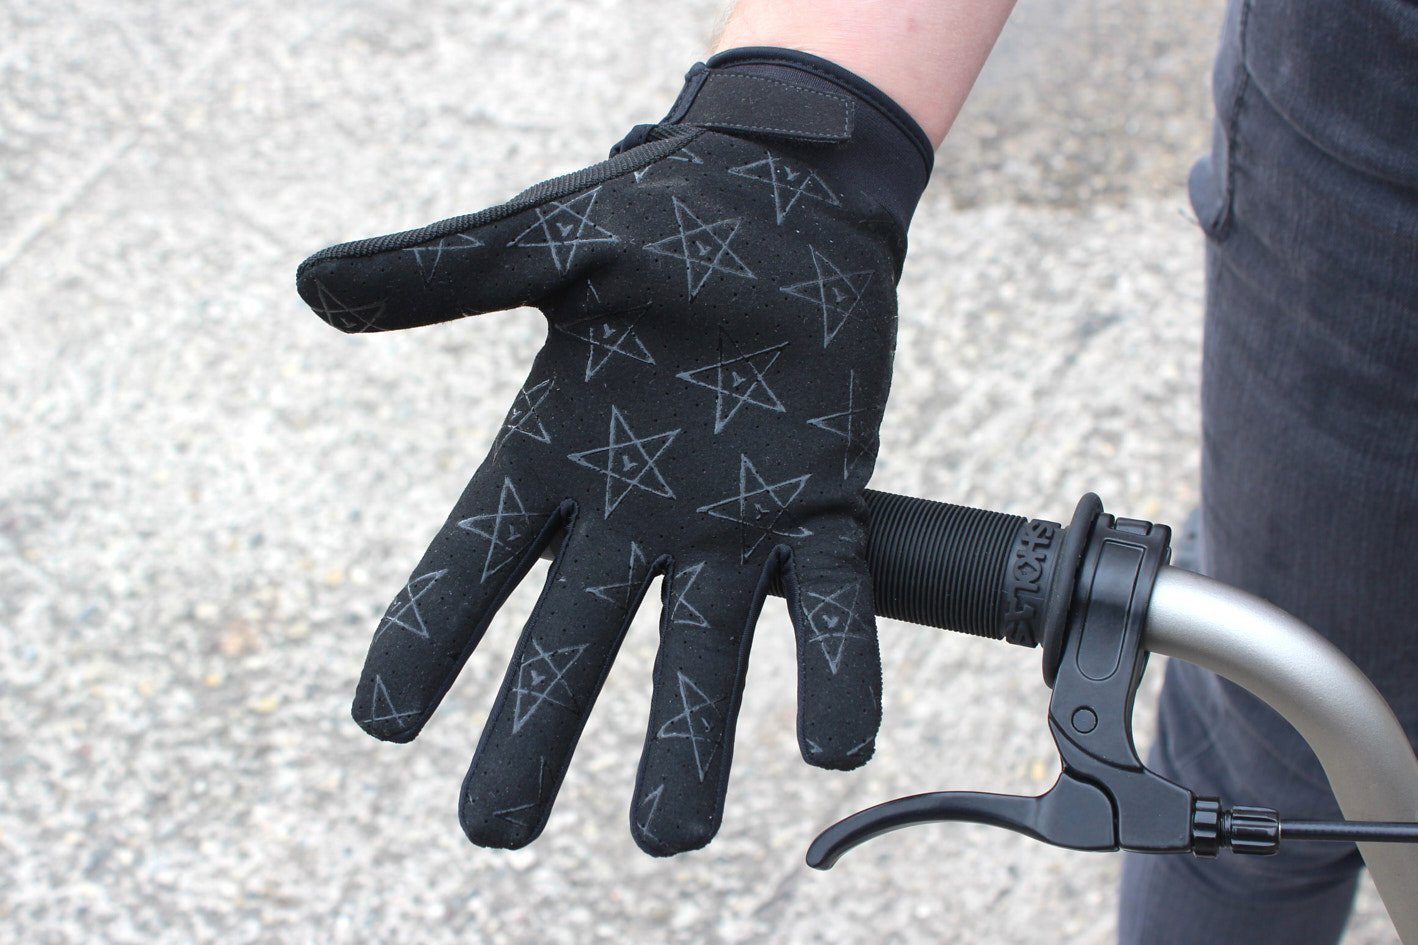 KHEbikes Handschuhe BMX 4130 L KHE Fahrradhandschuhe